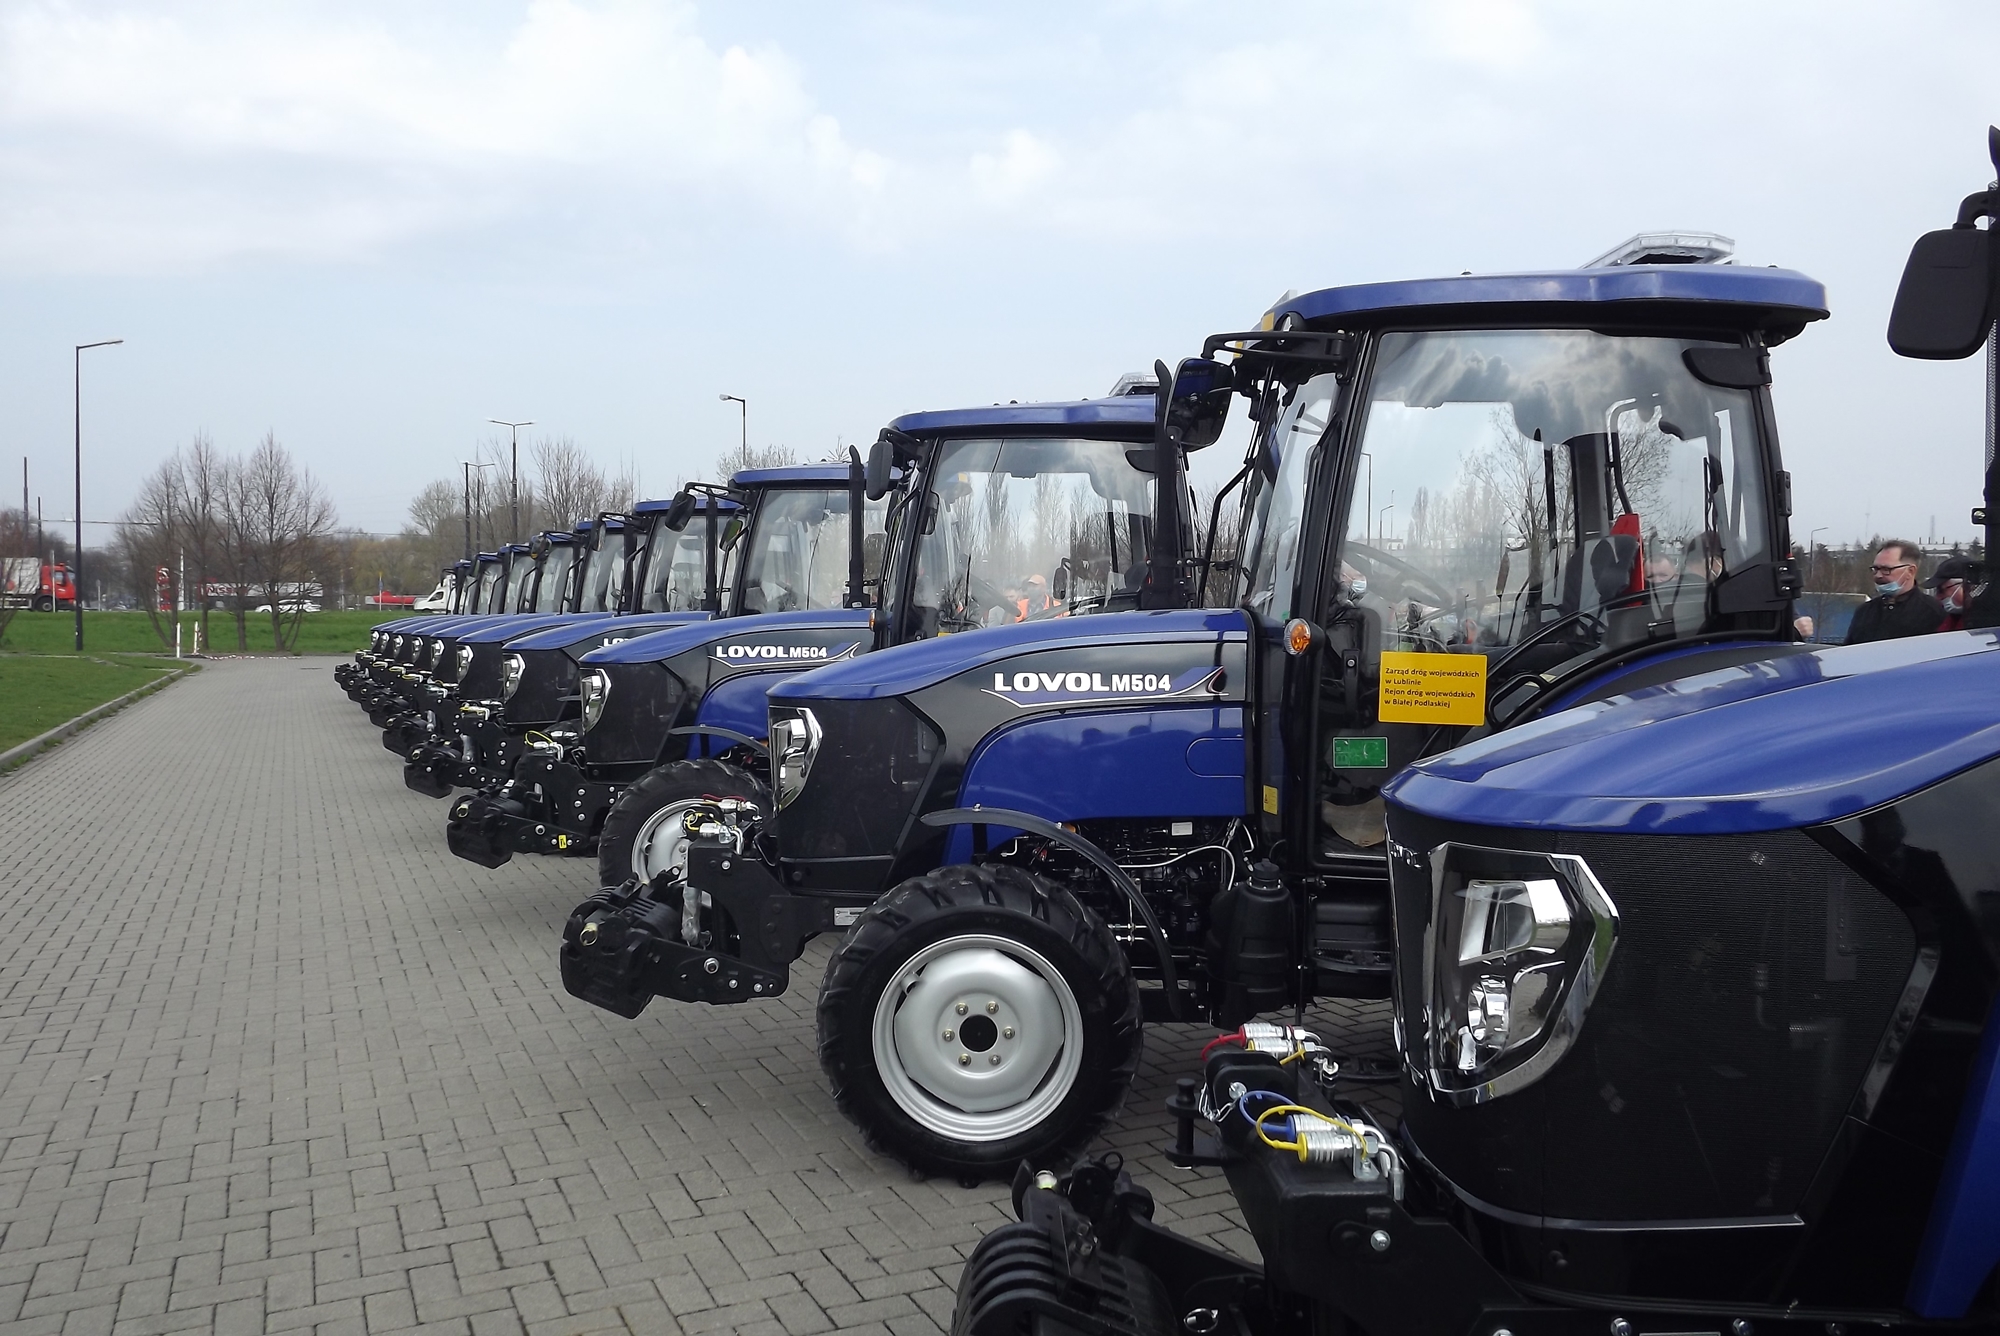 Na zdjęciu widzimy ustawione w szeregu małe ciągniki marki Lovol koloru niebieskiego, które będą służyły w Rejonach Dróg Wojewódzkich